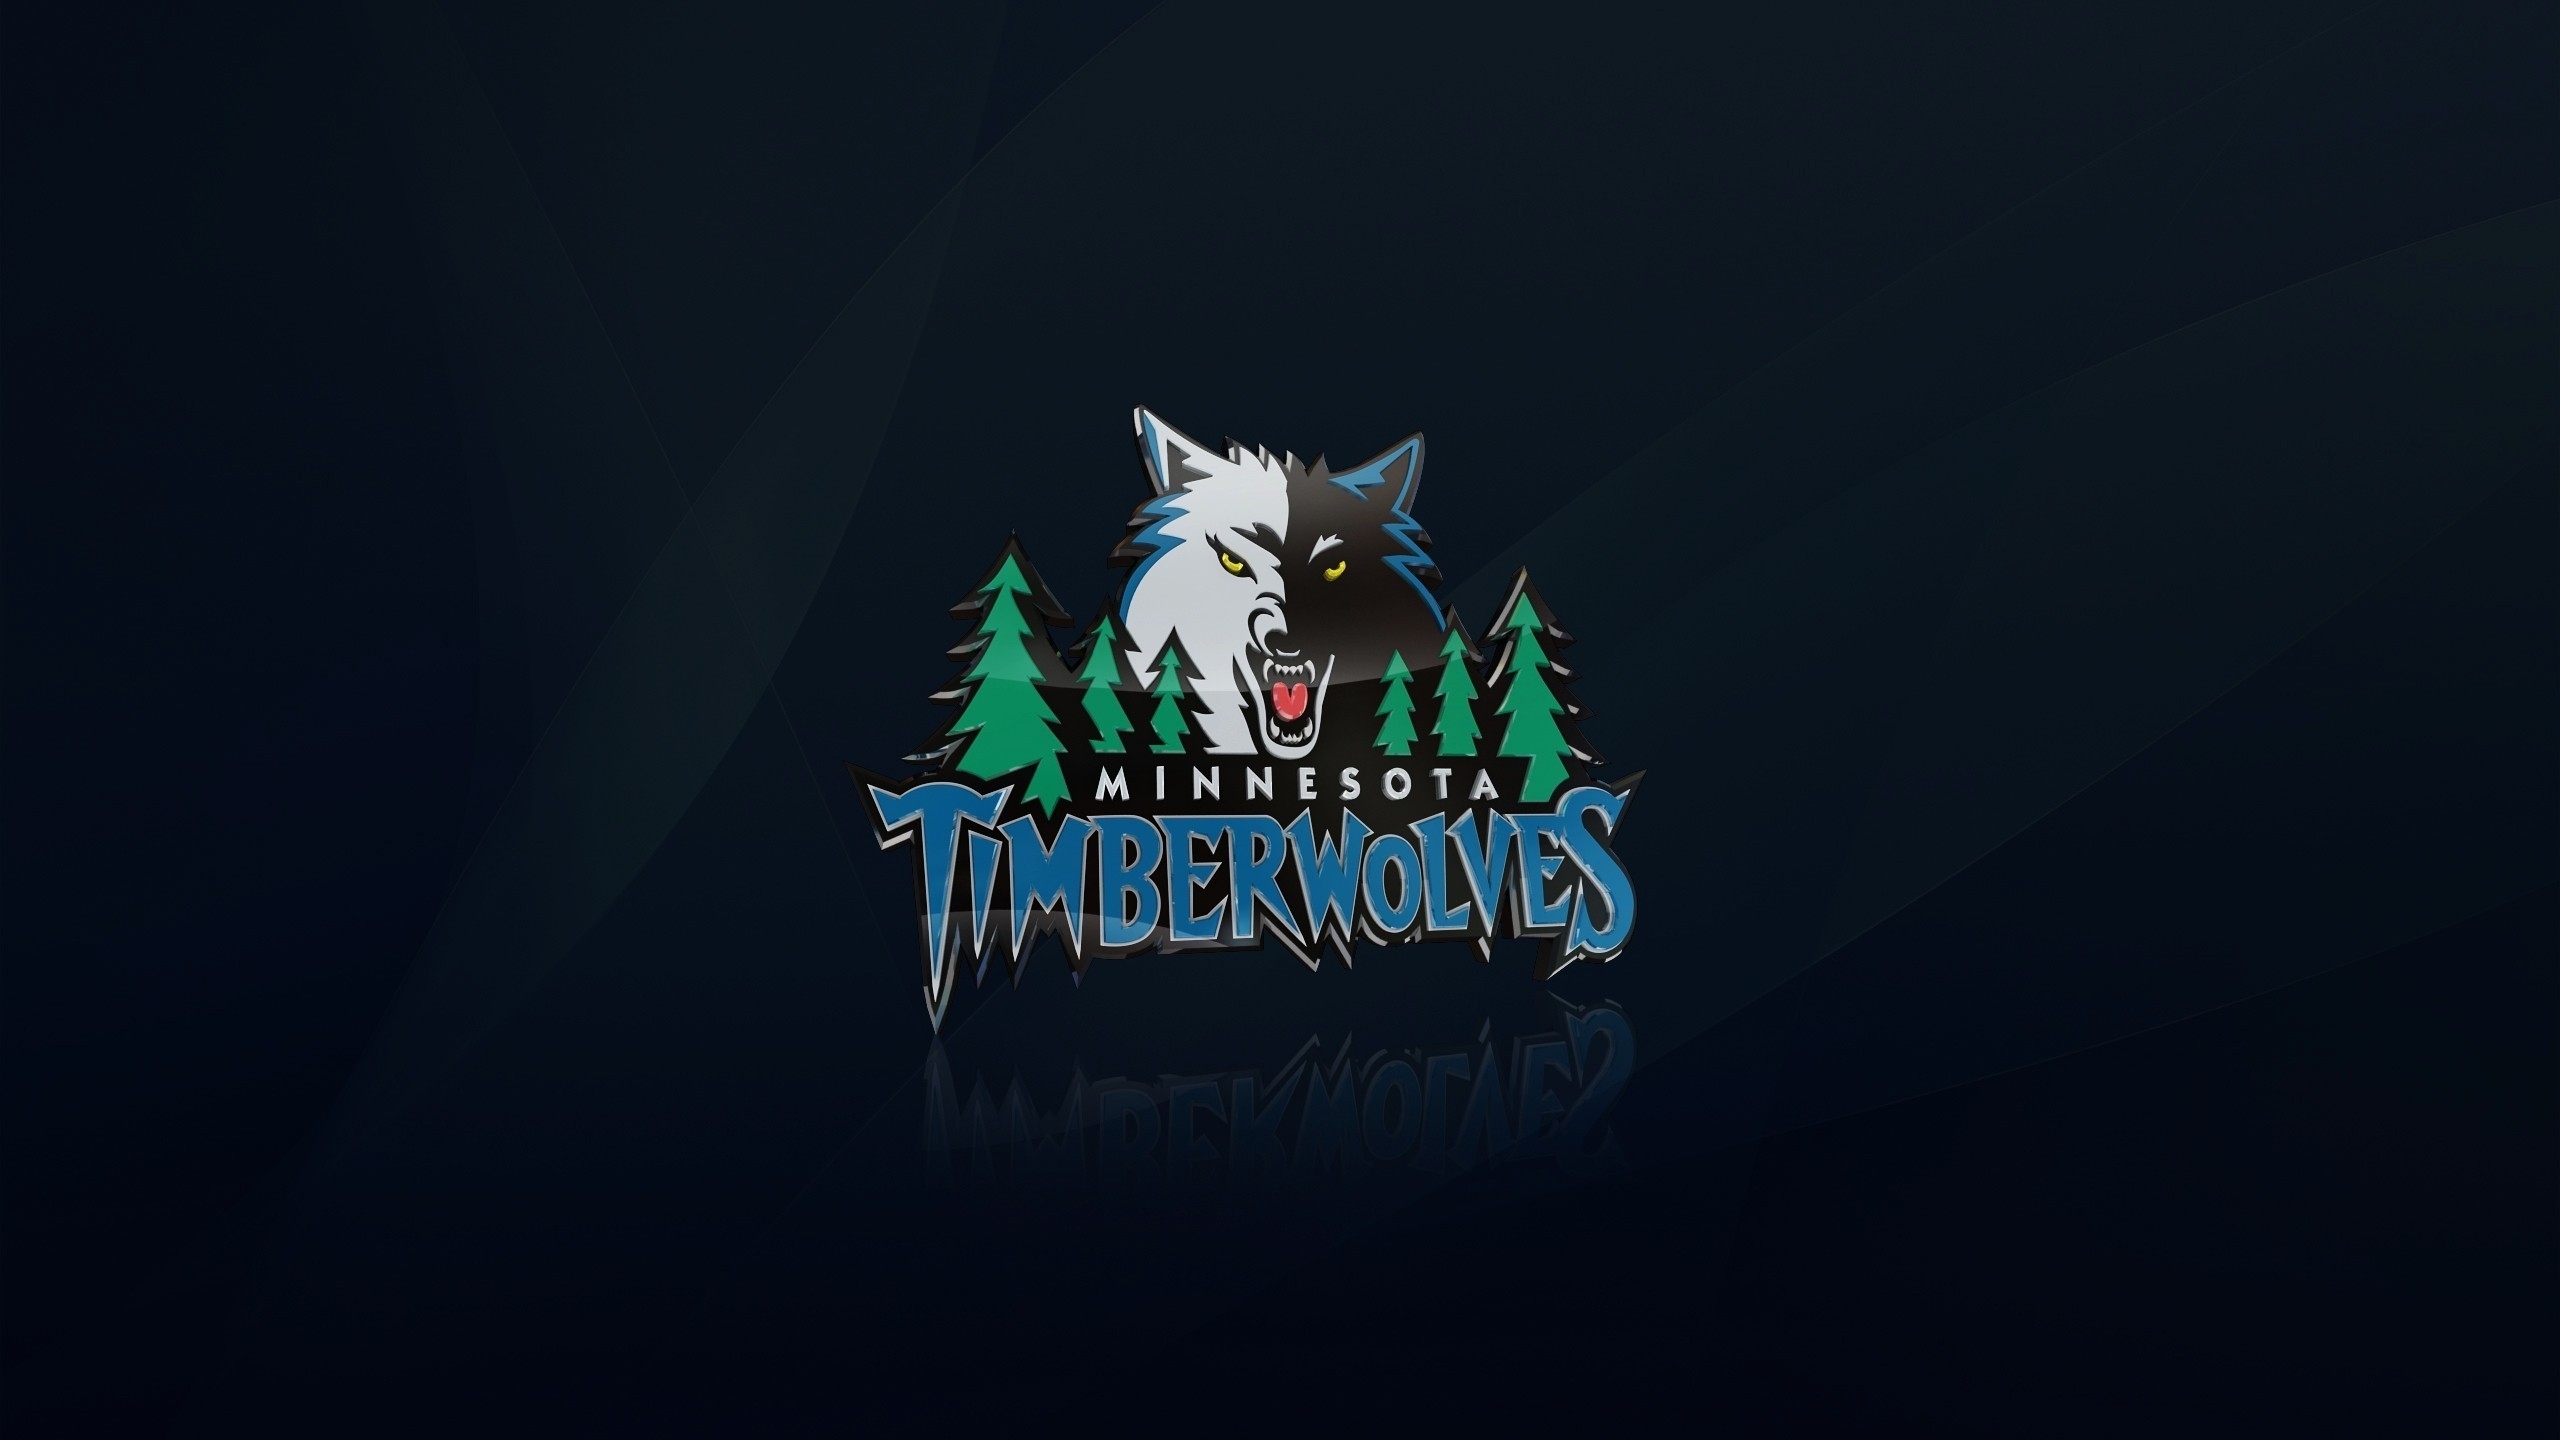 Minnesota Timberwolves Logo for 2560x1440 HDTV resolution